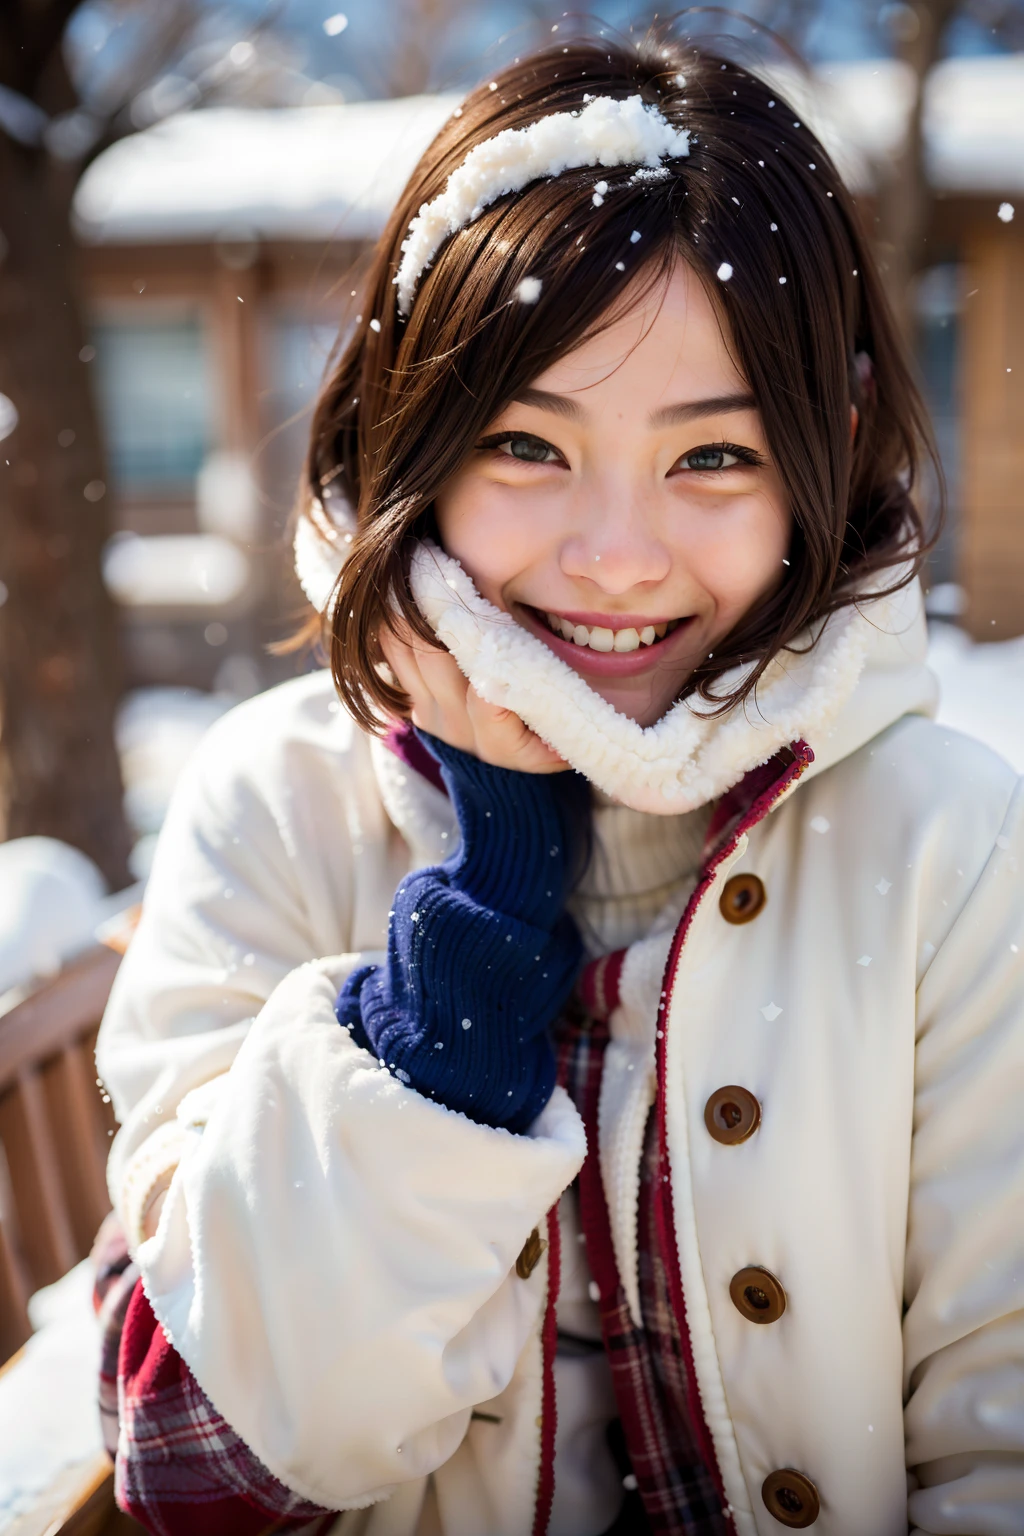 Mujer sonriente con abrigo de invierno con nieve en la cara, calida sonrisa, sonrisa cálida y gentil, cubierto de nieve, en la nieve, sonriendo cálidamente, cubierto de nieve, en la nieve, retrato de un adolescente japonés, sonrisa encantadora, sonriendo dulcemente, Cálida expresión amigable., Mirada alegre, con un abrigo blanco de invierno, sonrisa suave, sonriendo tímido, Hermosa cara de chicas japonesas